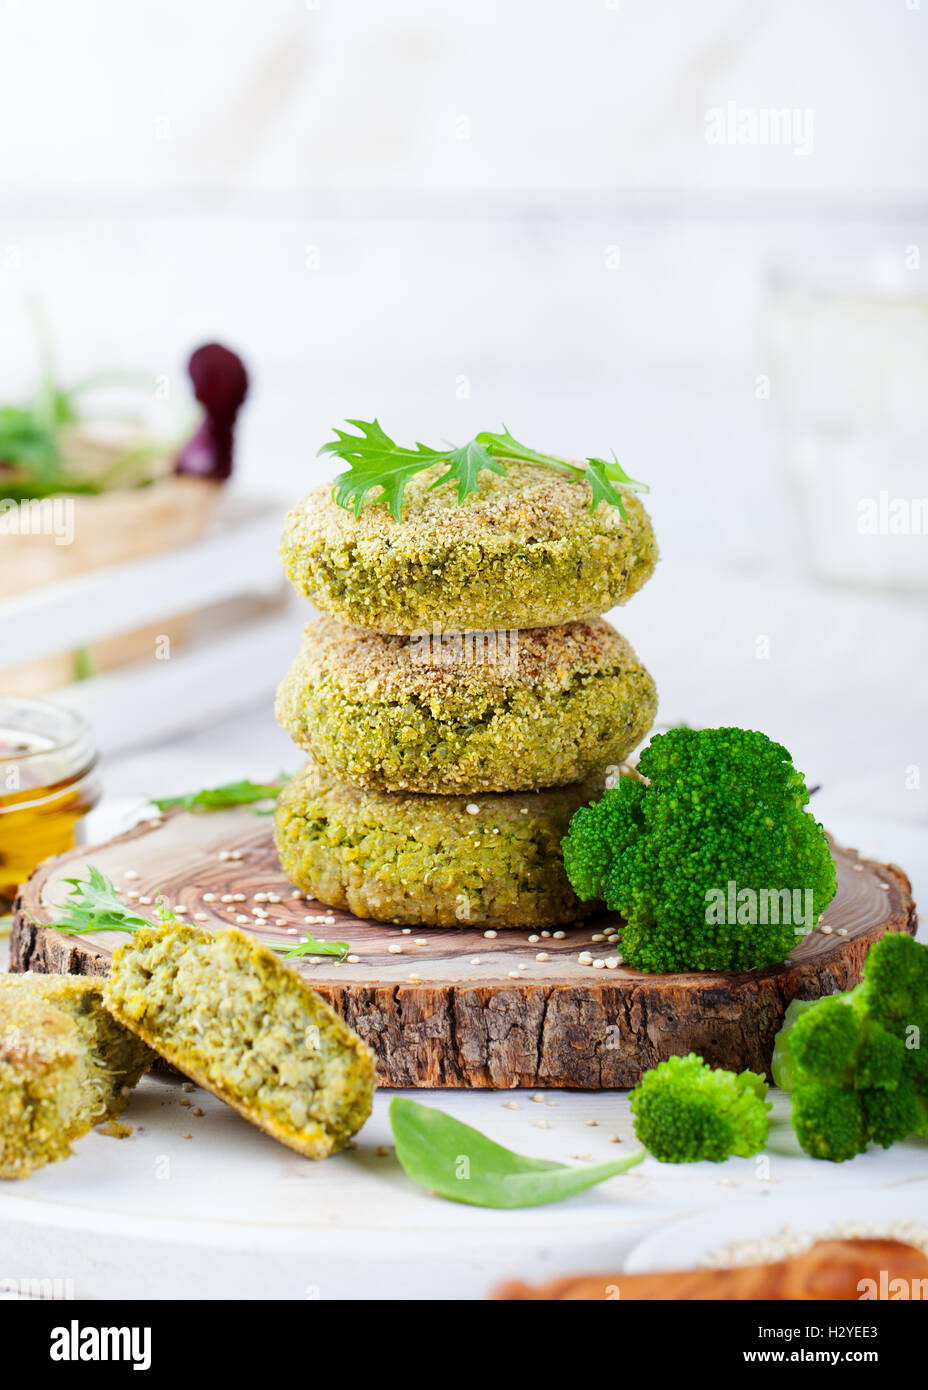 Burger végétalien sain avec brocoli, épinards patty Banque D'Images